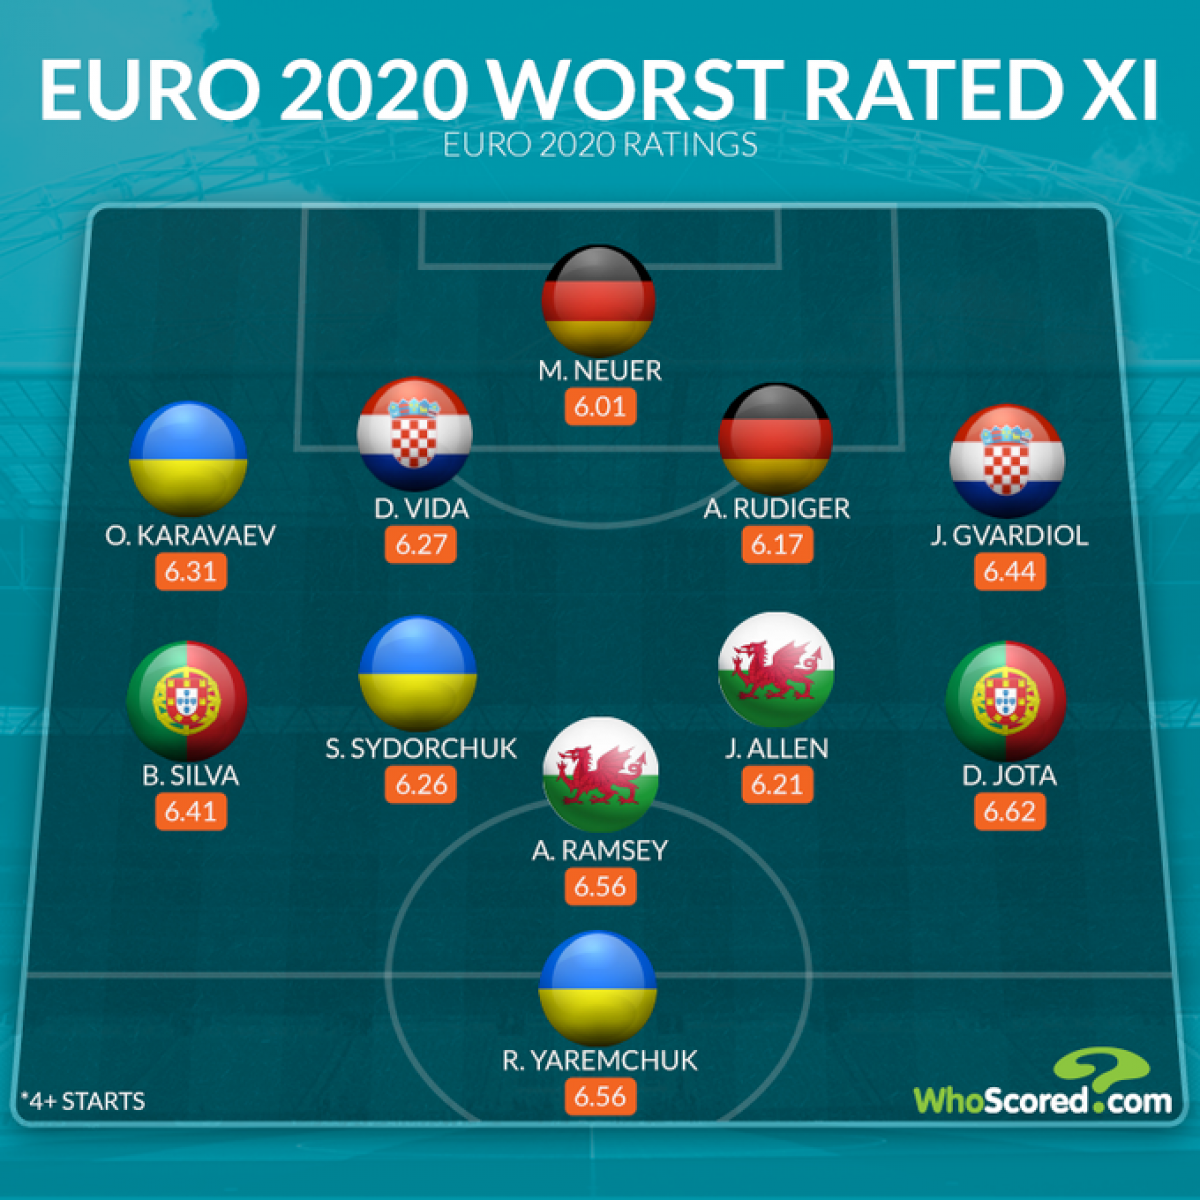 Đội hình tệ nhất EURO 2021 theo đánh giá của Whoscored